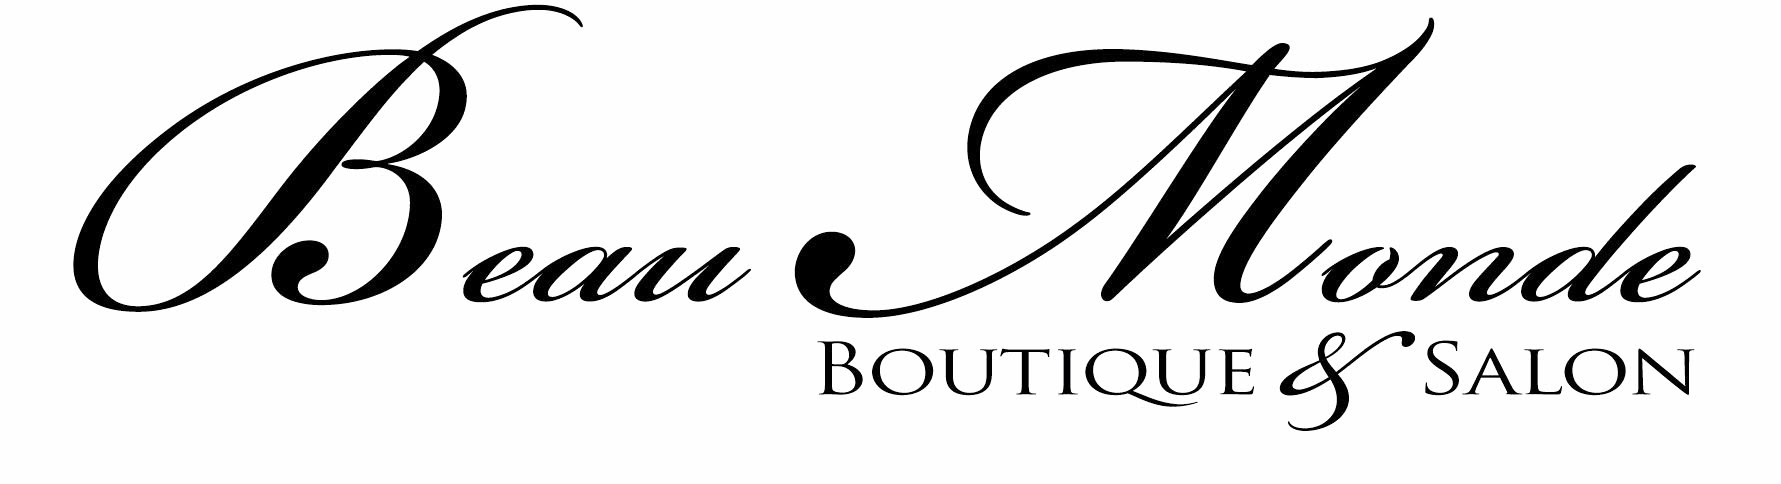 Beau Monde Boutique & Salon